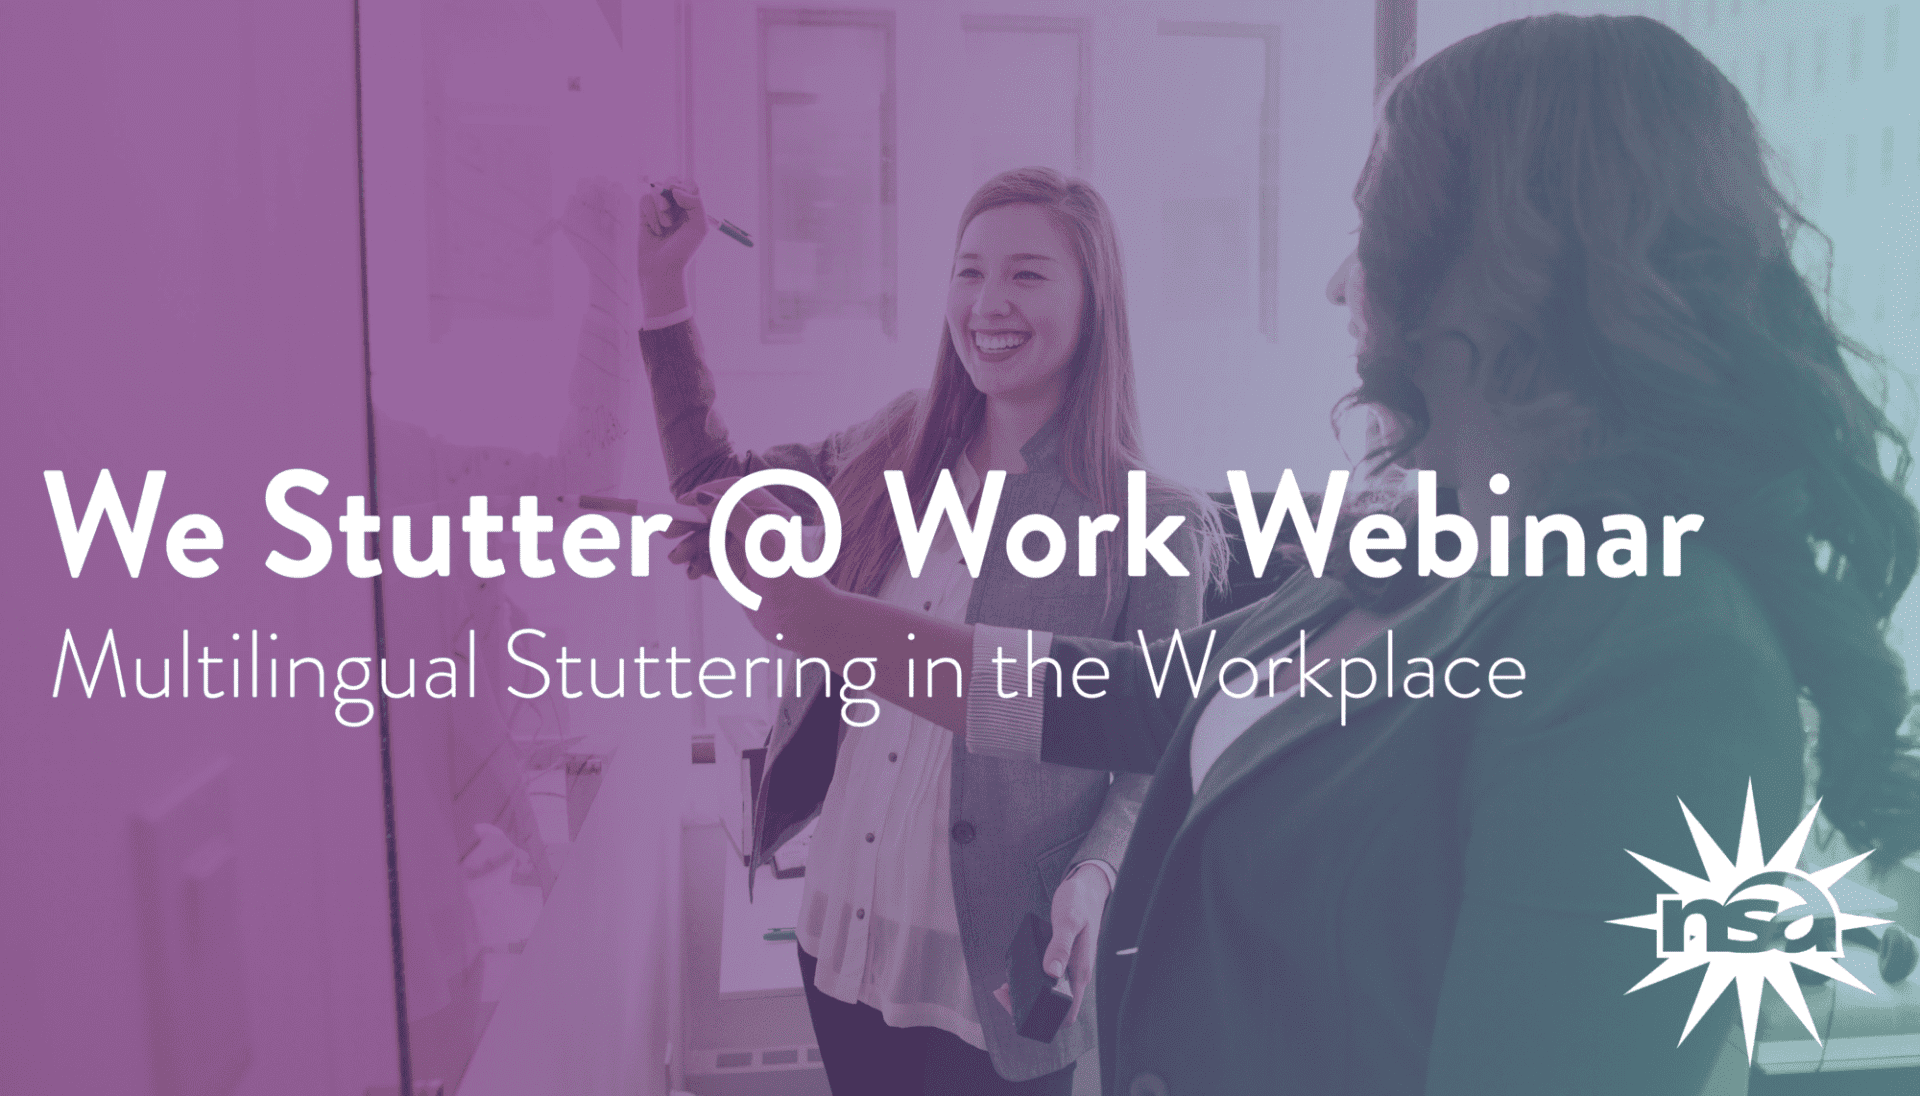 Workplace Webinar - Multilingual Stuttering in the Workplace